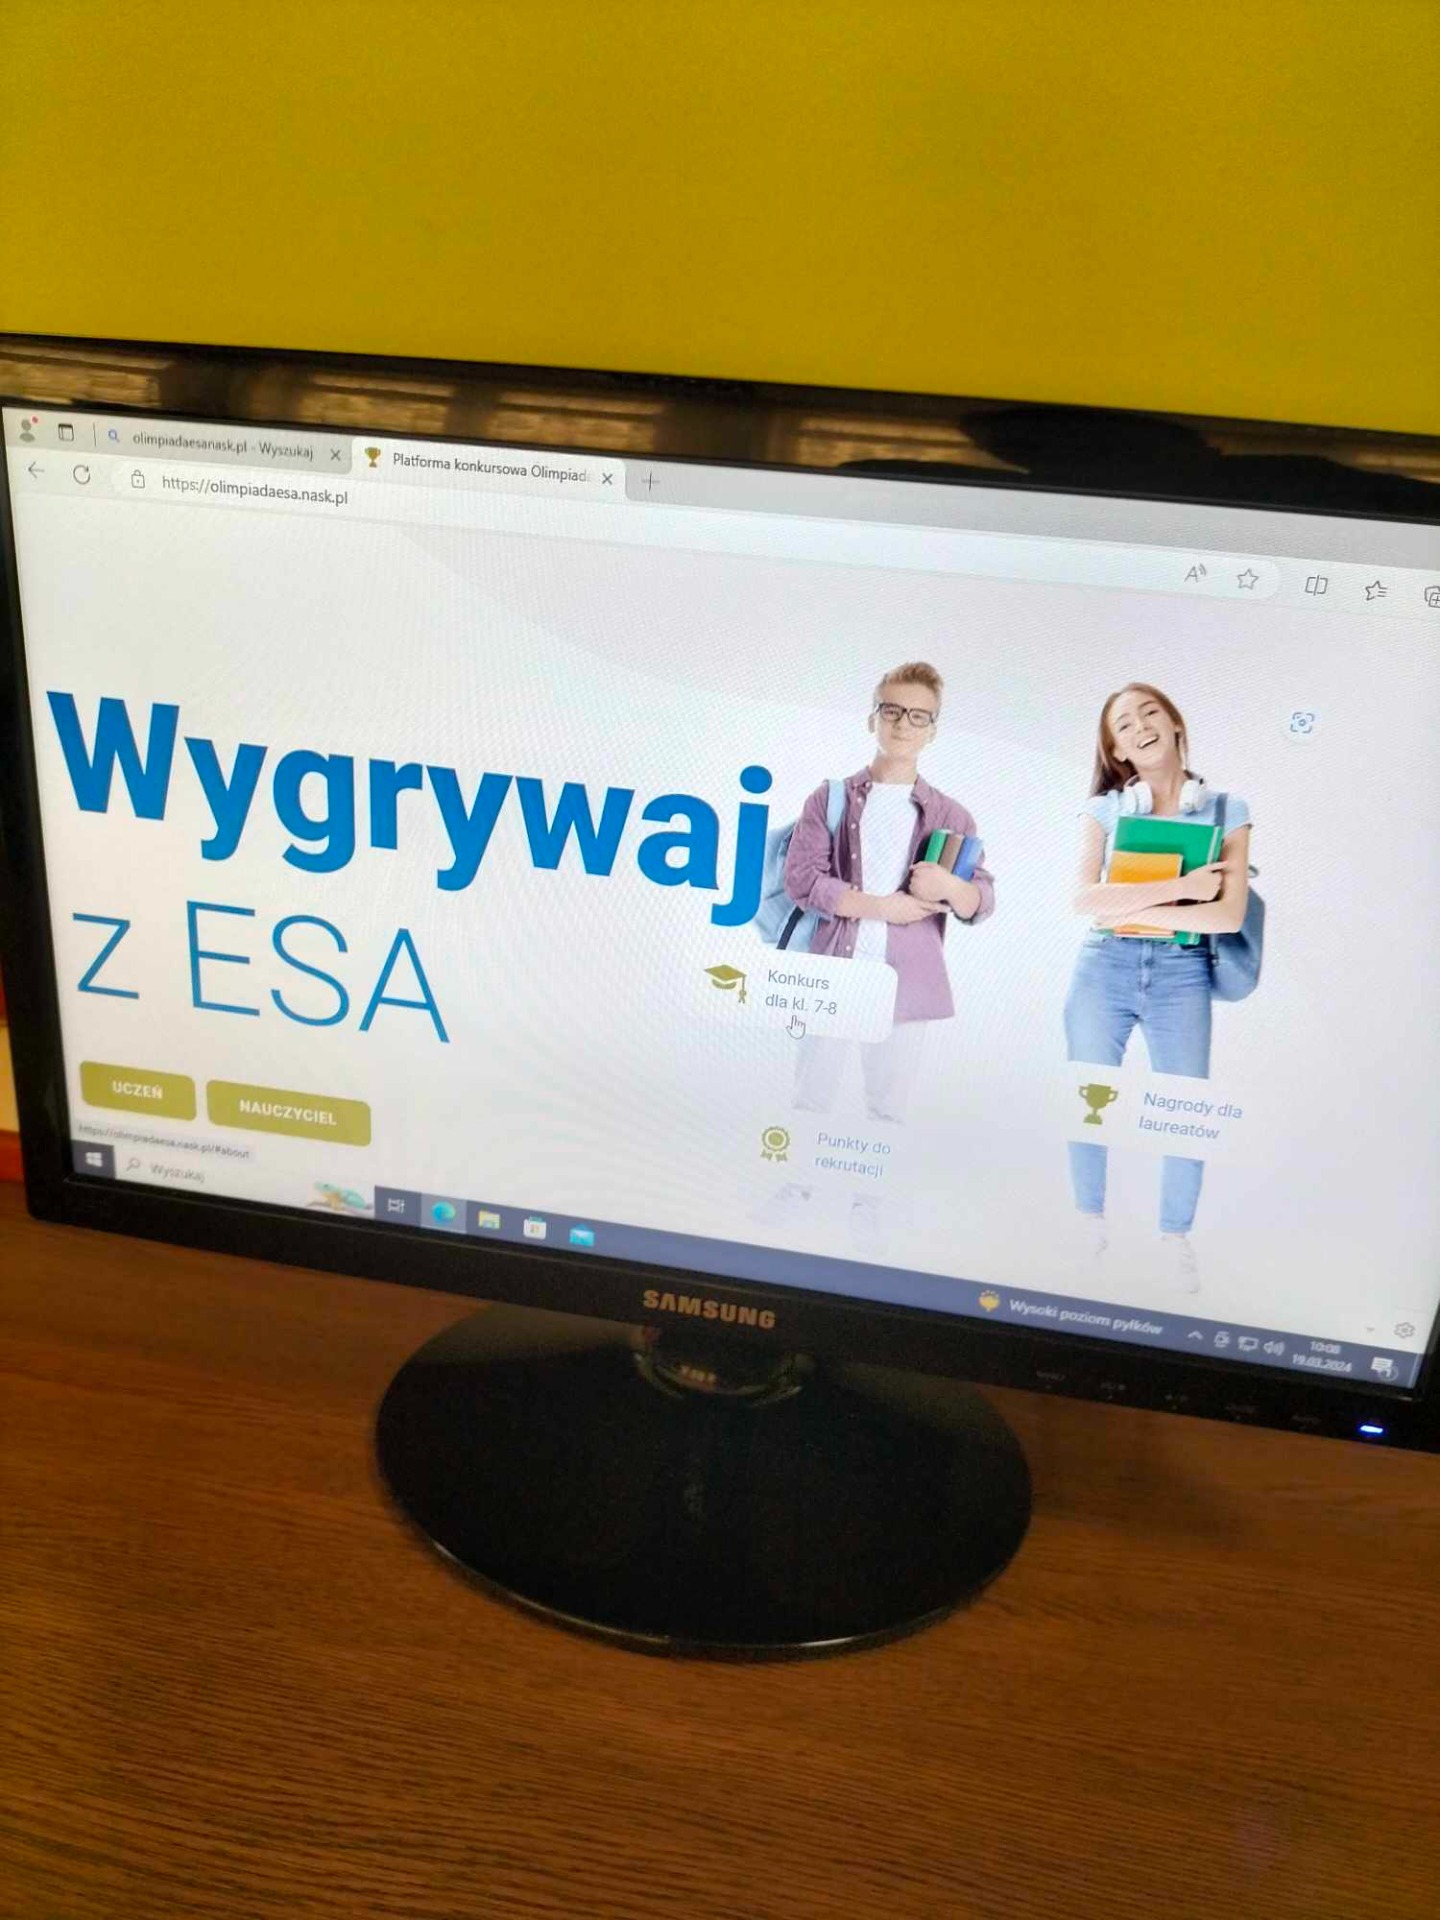 Ekran monitora komputerowego z wyświetlanym napisem "Wygrywaj z ESA".